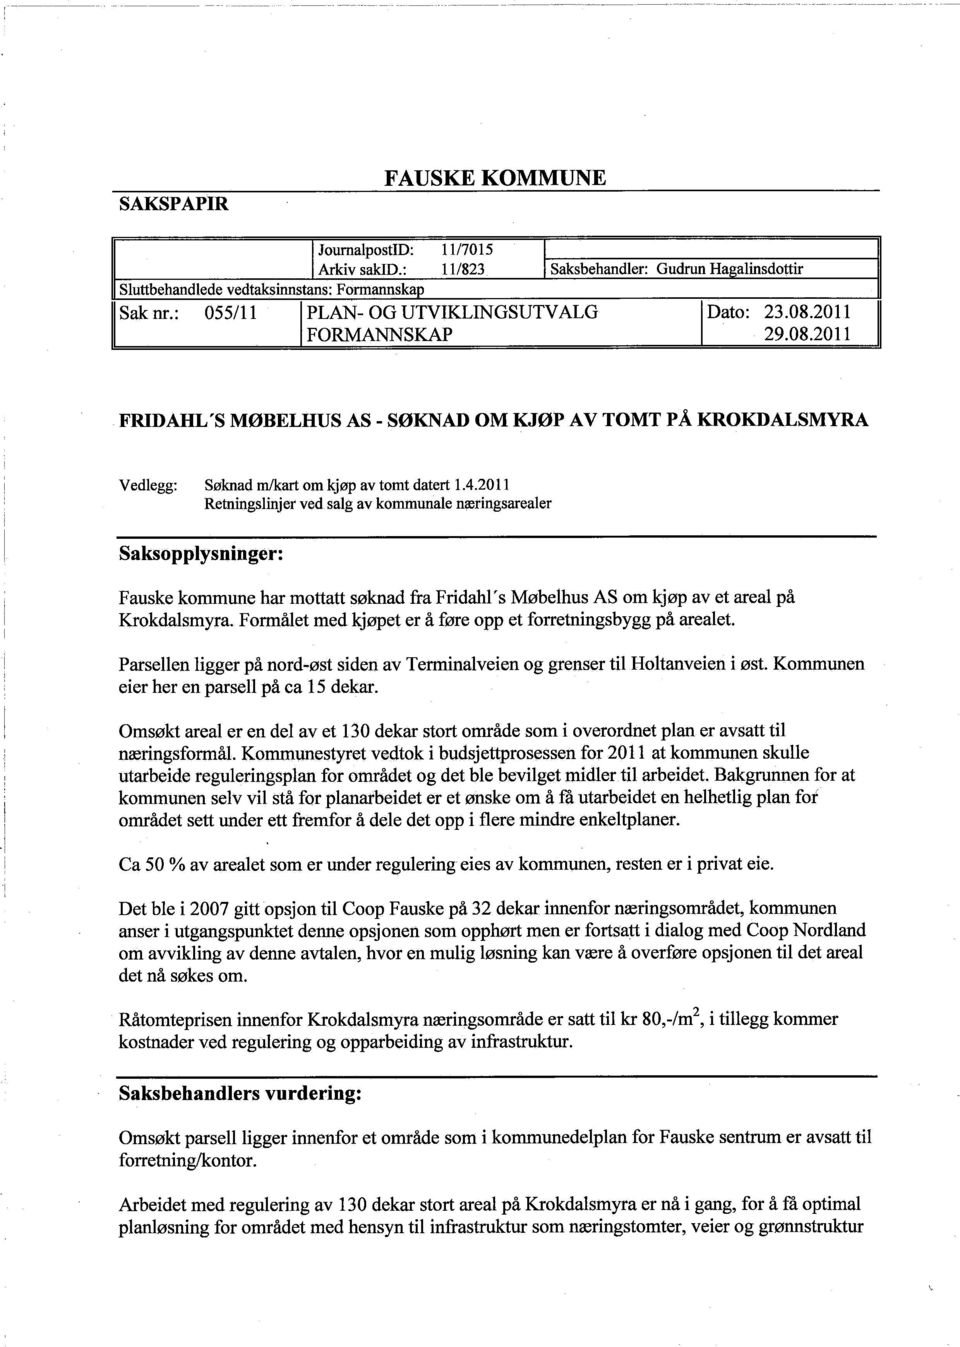 2011 Retningslinjer ved salg av kommunale meringsarealer Saksopplysninger: Fauske kommune har mottatt søknad fra Fridahl ' s Møbelhus AS om kjøp av et areal på Krokdalsmyra.